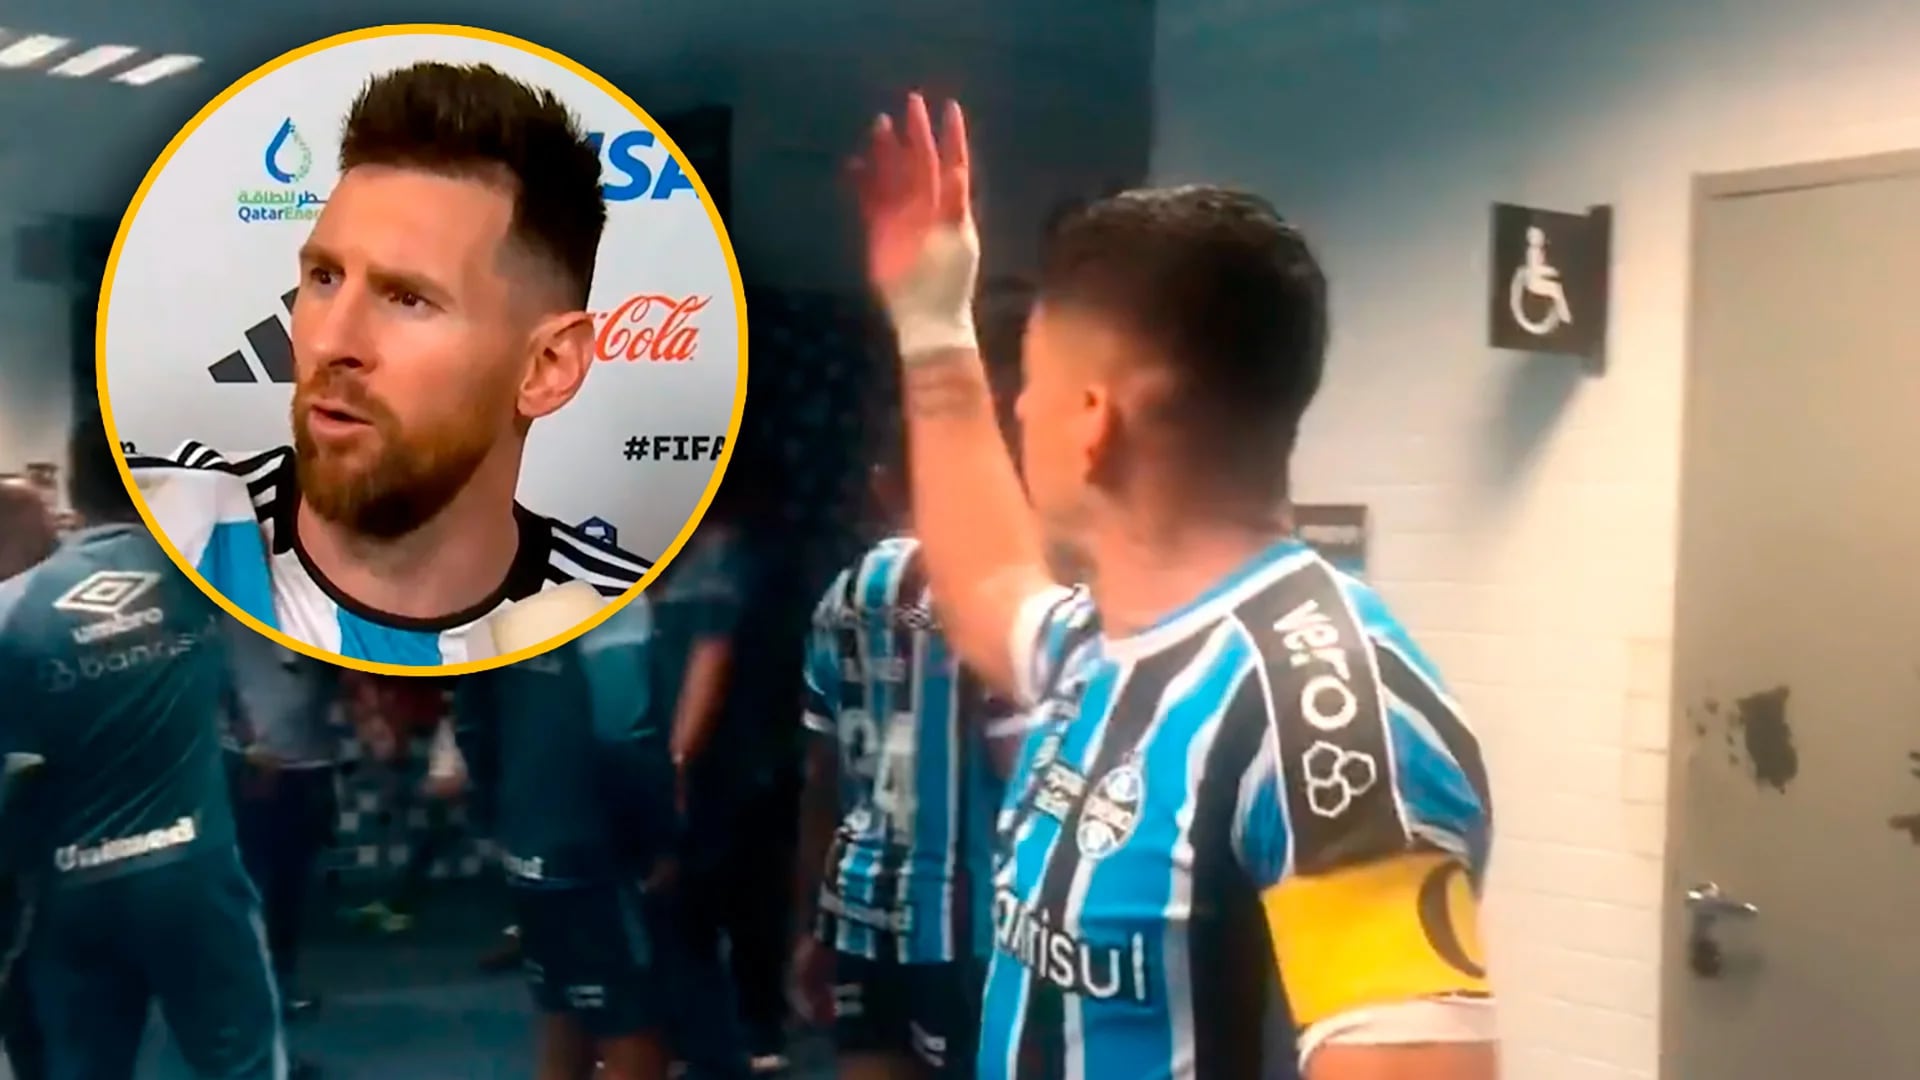 El momento de furia de Luis Suárez en Gremio: se peleó con un rival e imitó el “andá pallá” de Messi